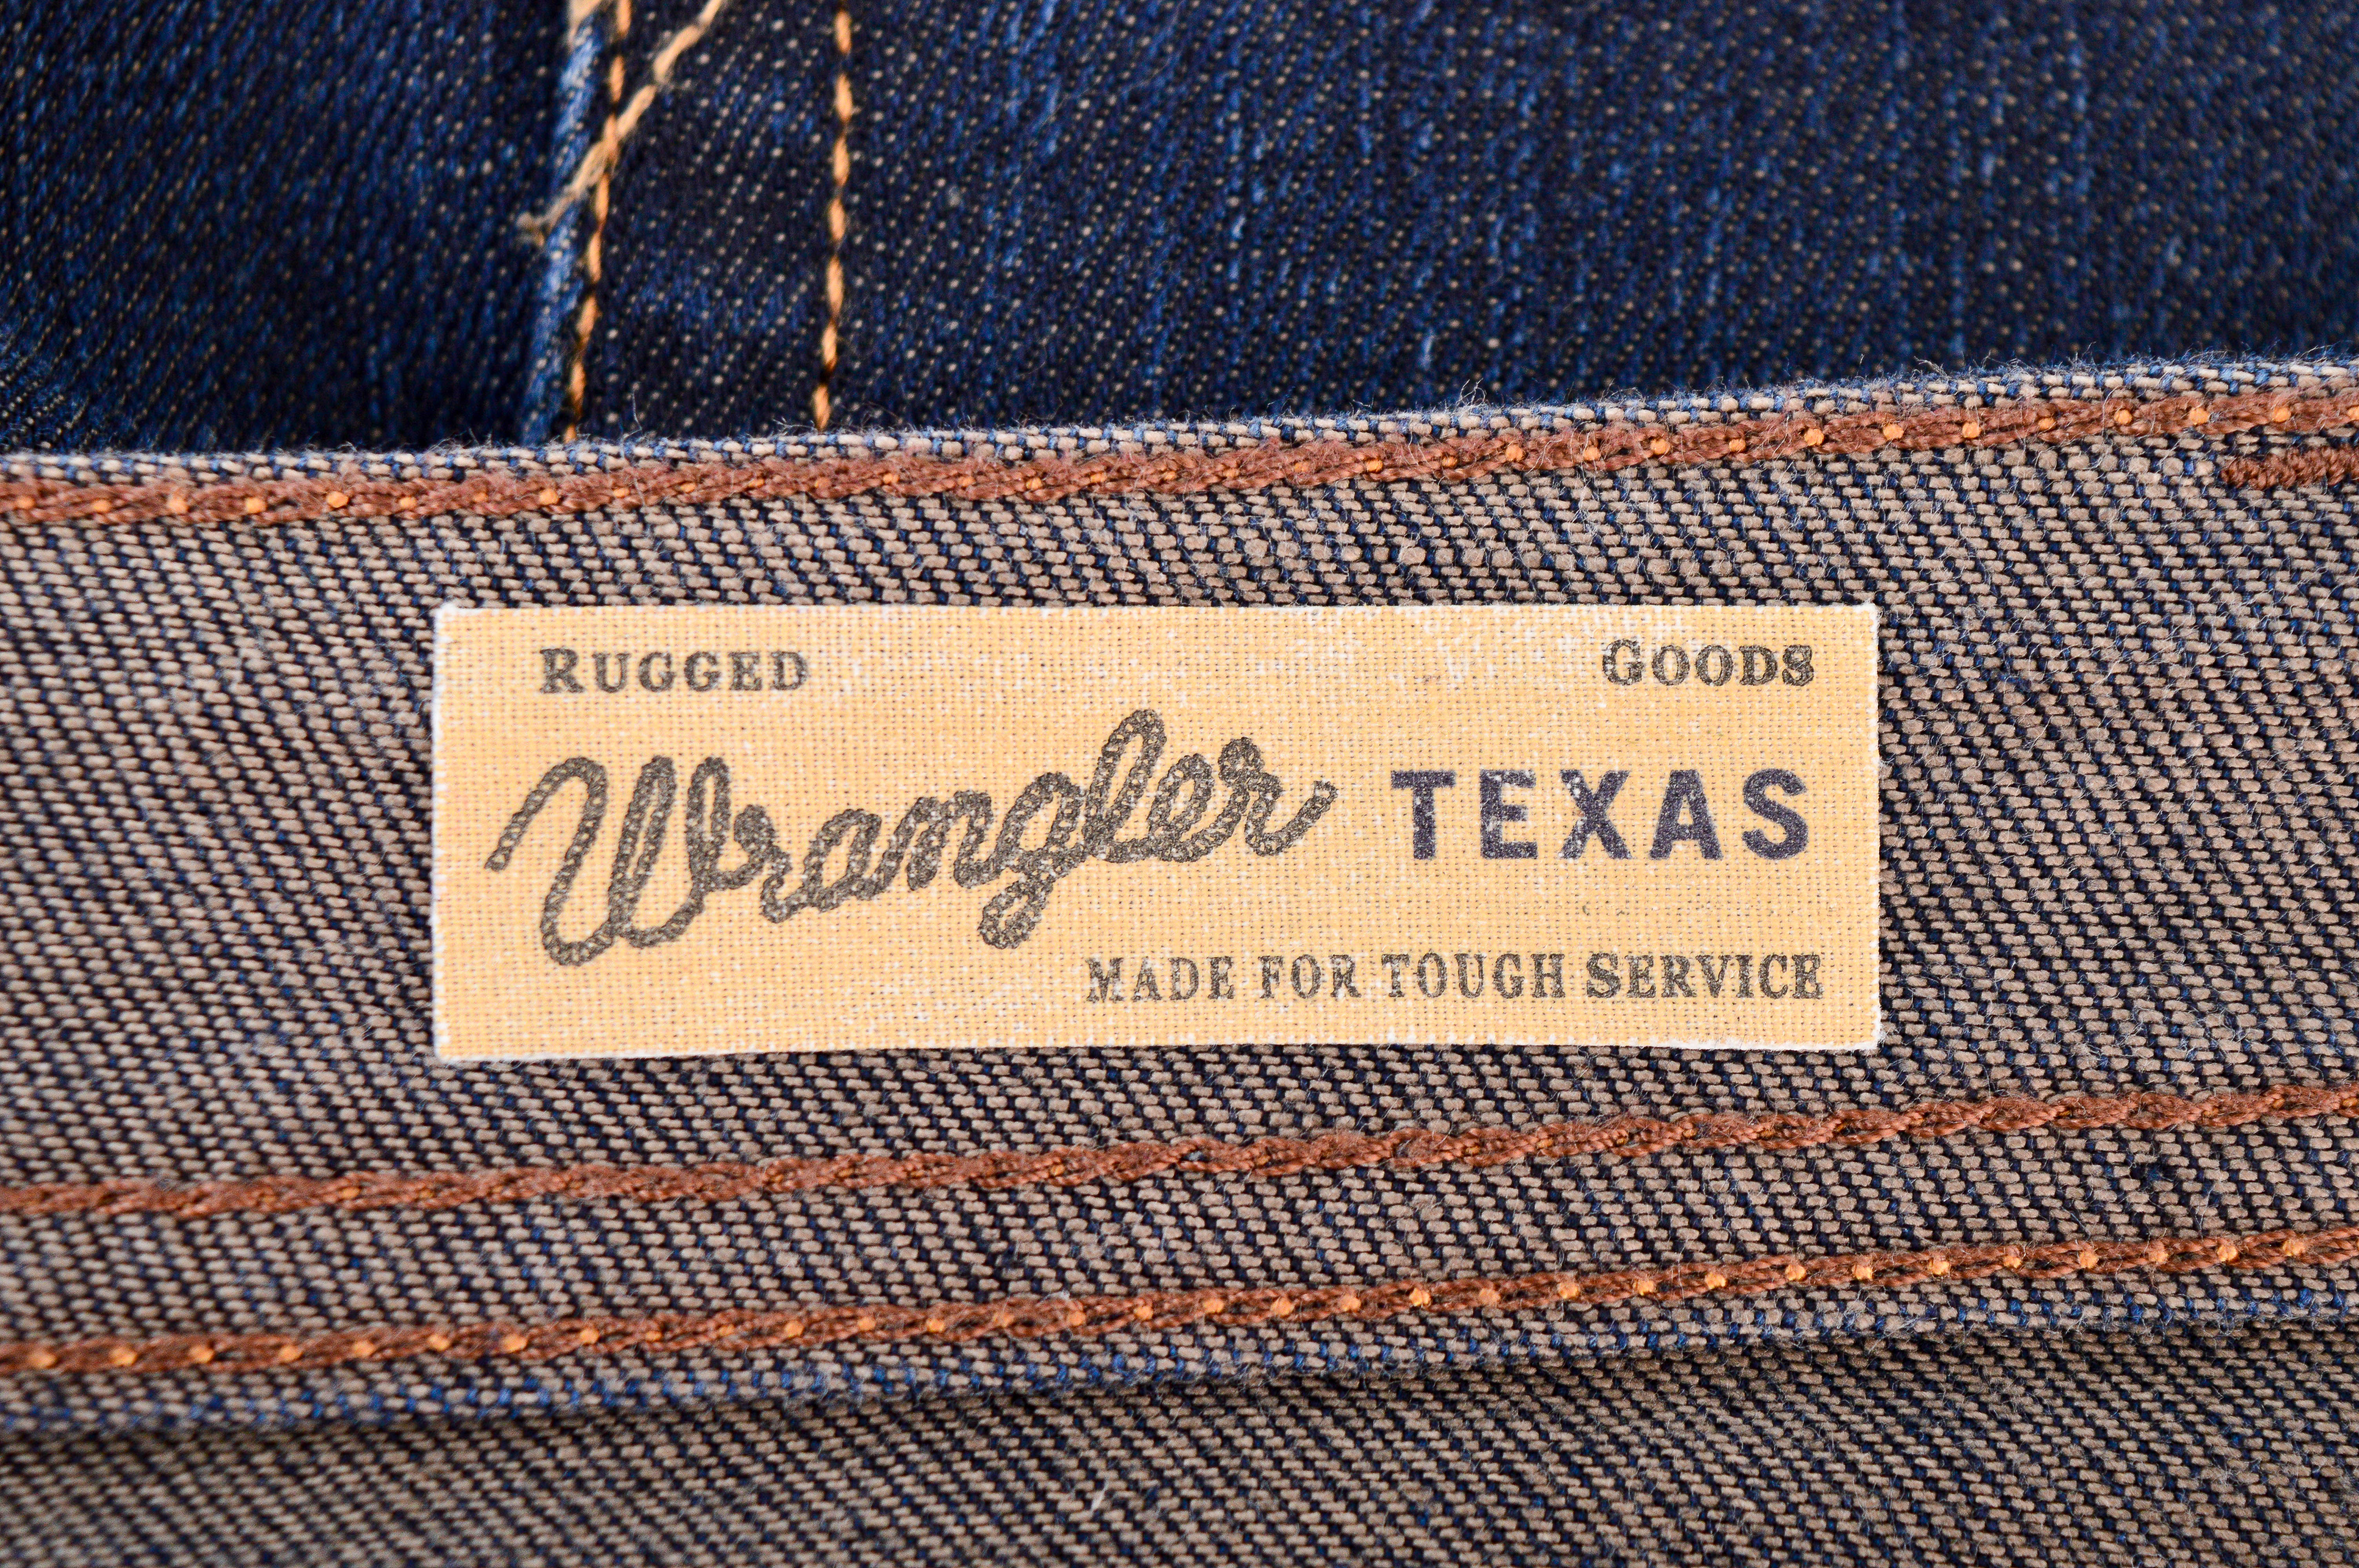 Men's jeans - Wrangler - 2